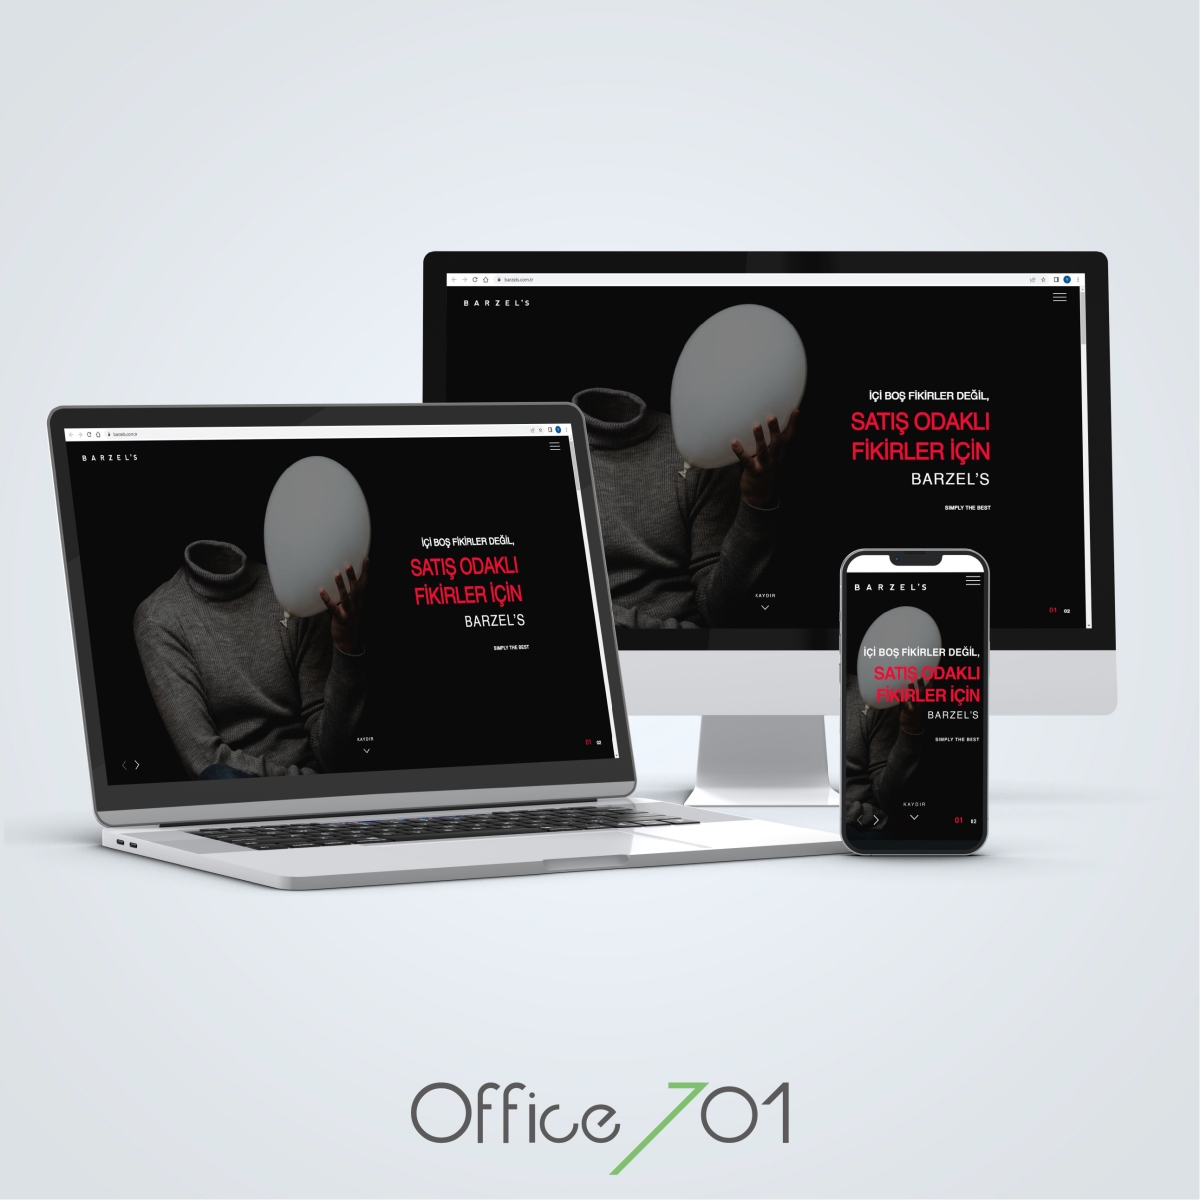 Office701 | Barzels Web Sitesi